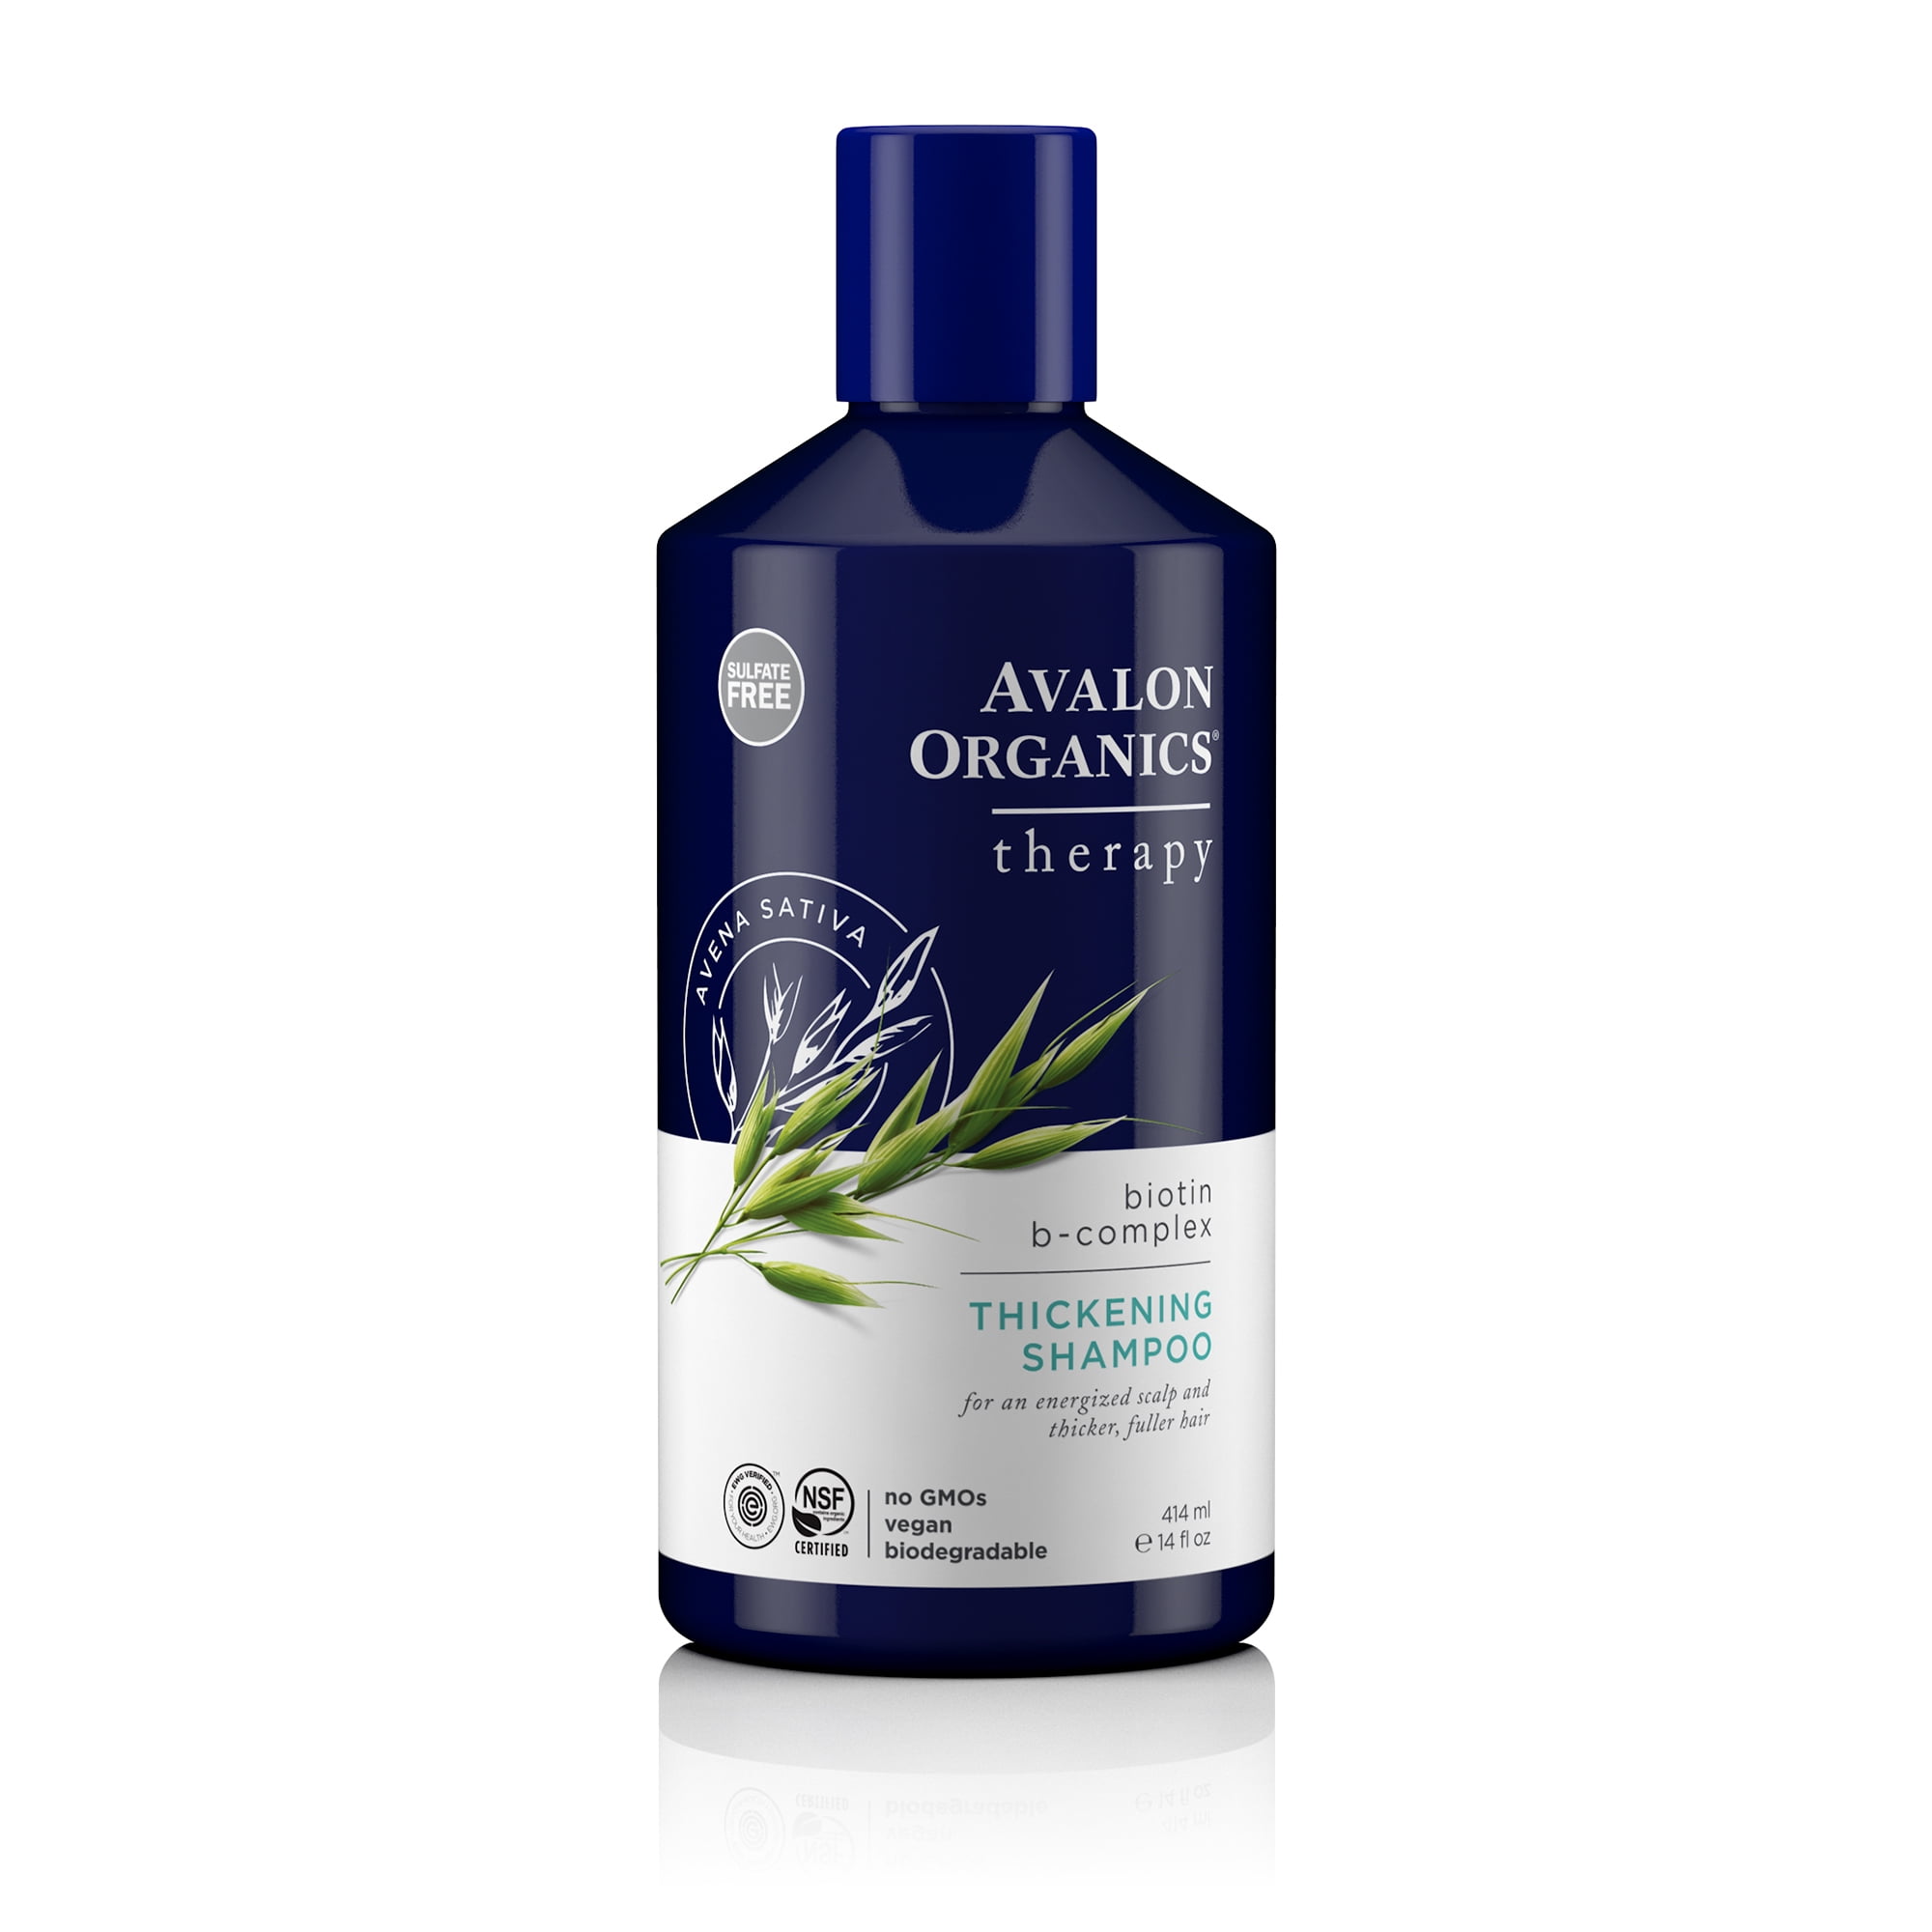 Organics Biotin B-Complex Shampoo, oz. Walmart.com